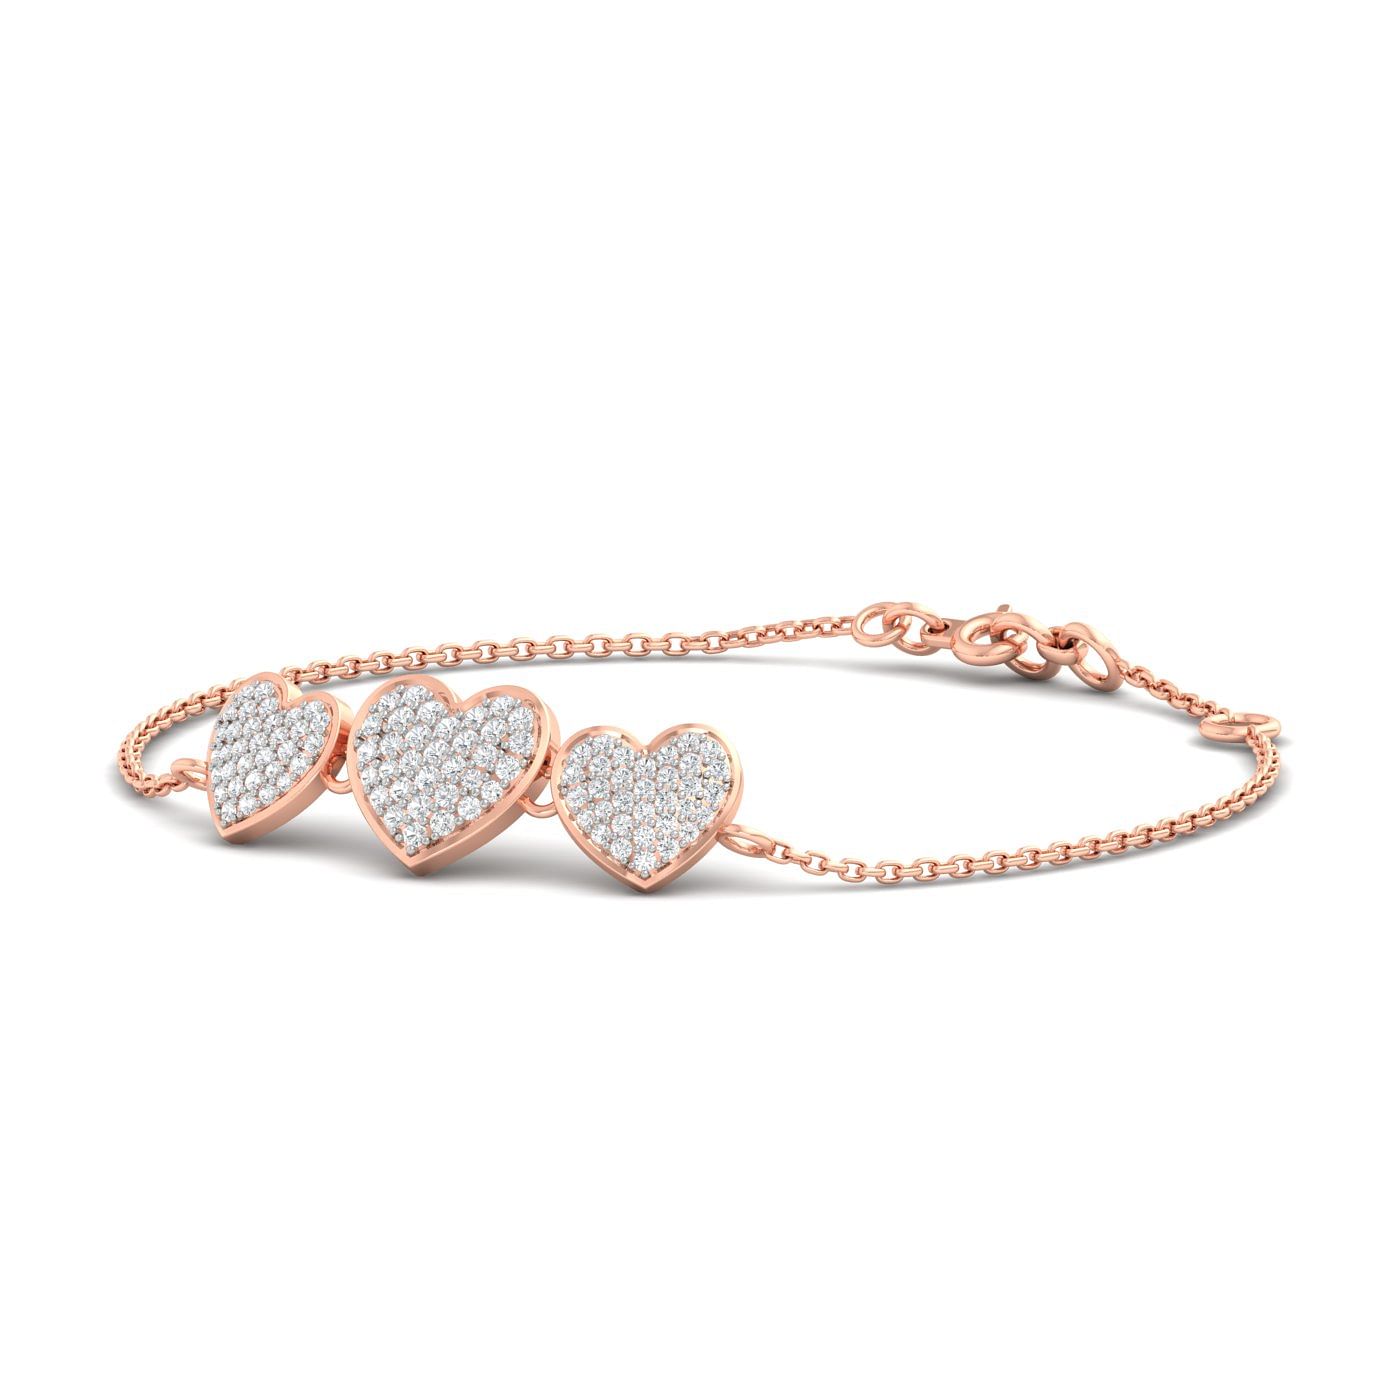 Tri Cluster Heart Diamond Bracelet Design For Women